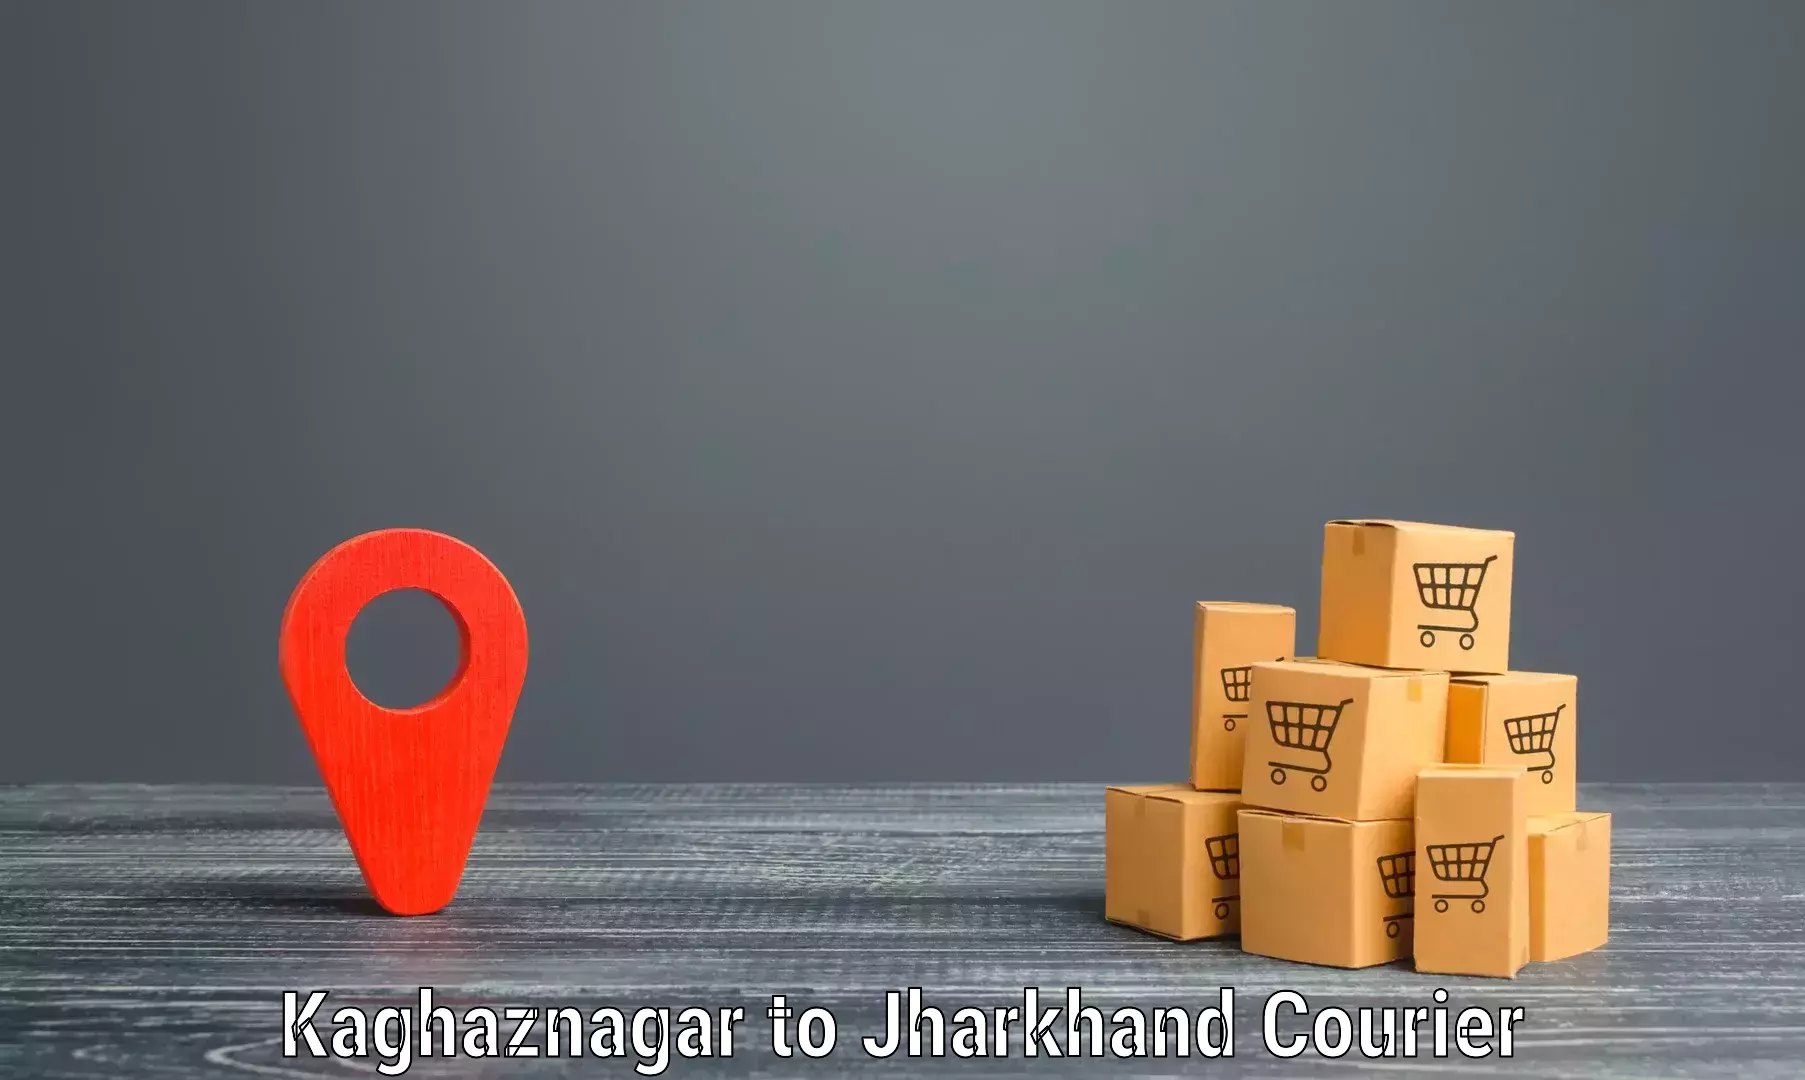 Wholesale parcel delivery Kaghaznagar to Jamshedpur